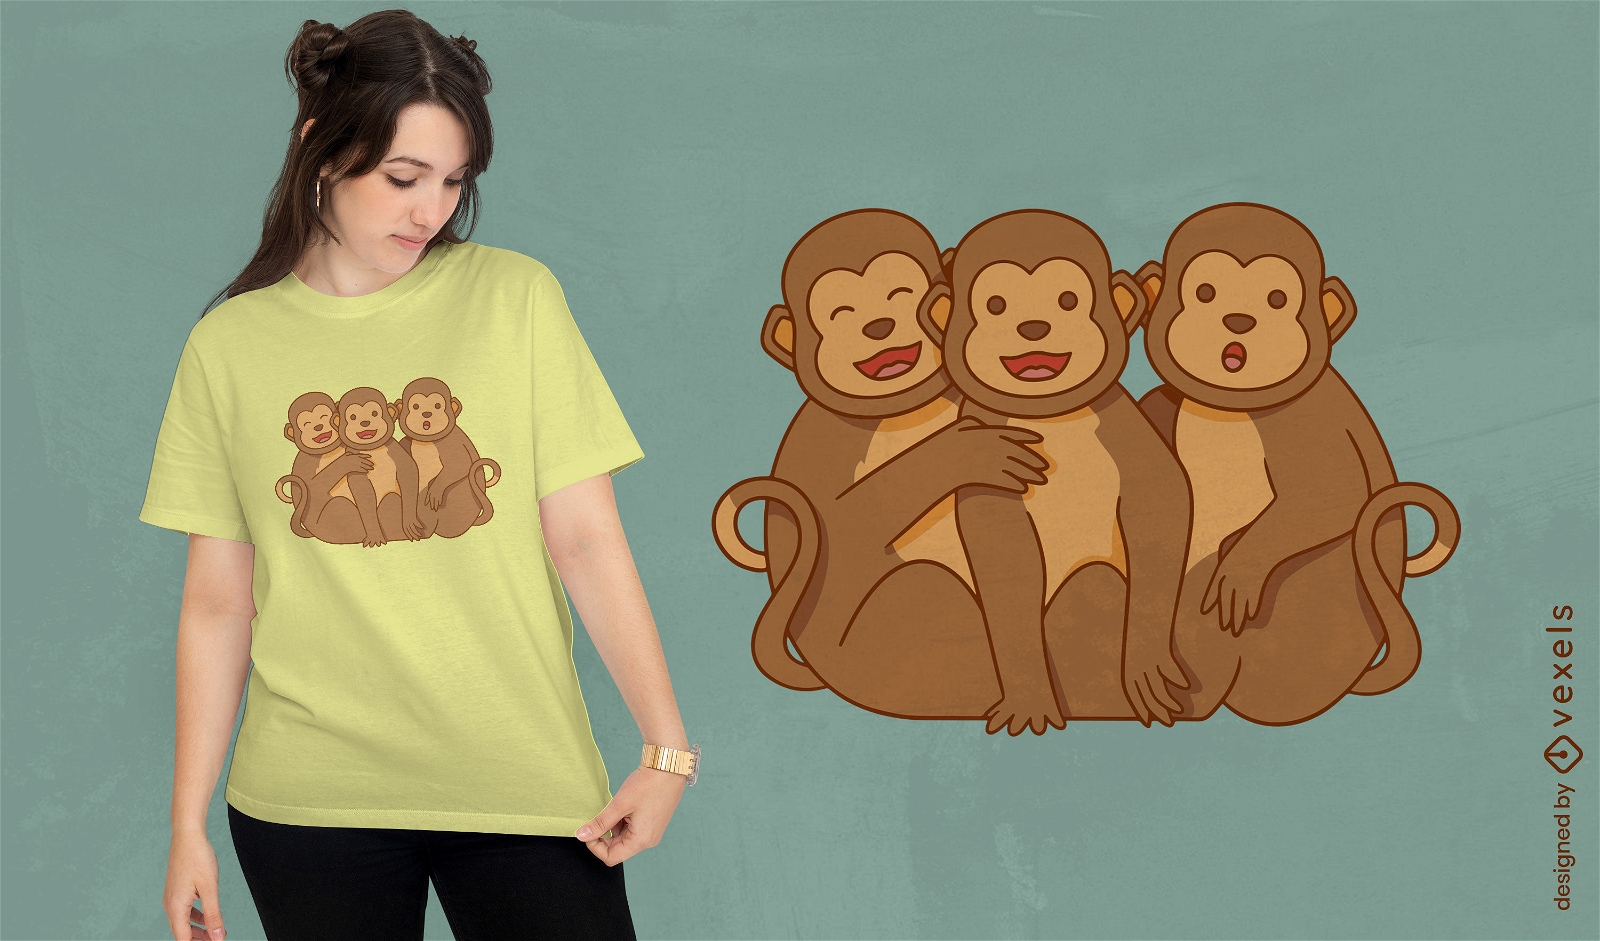 Dise?o de camiseta de tres monos abrazados.